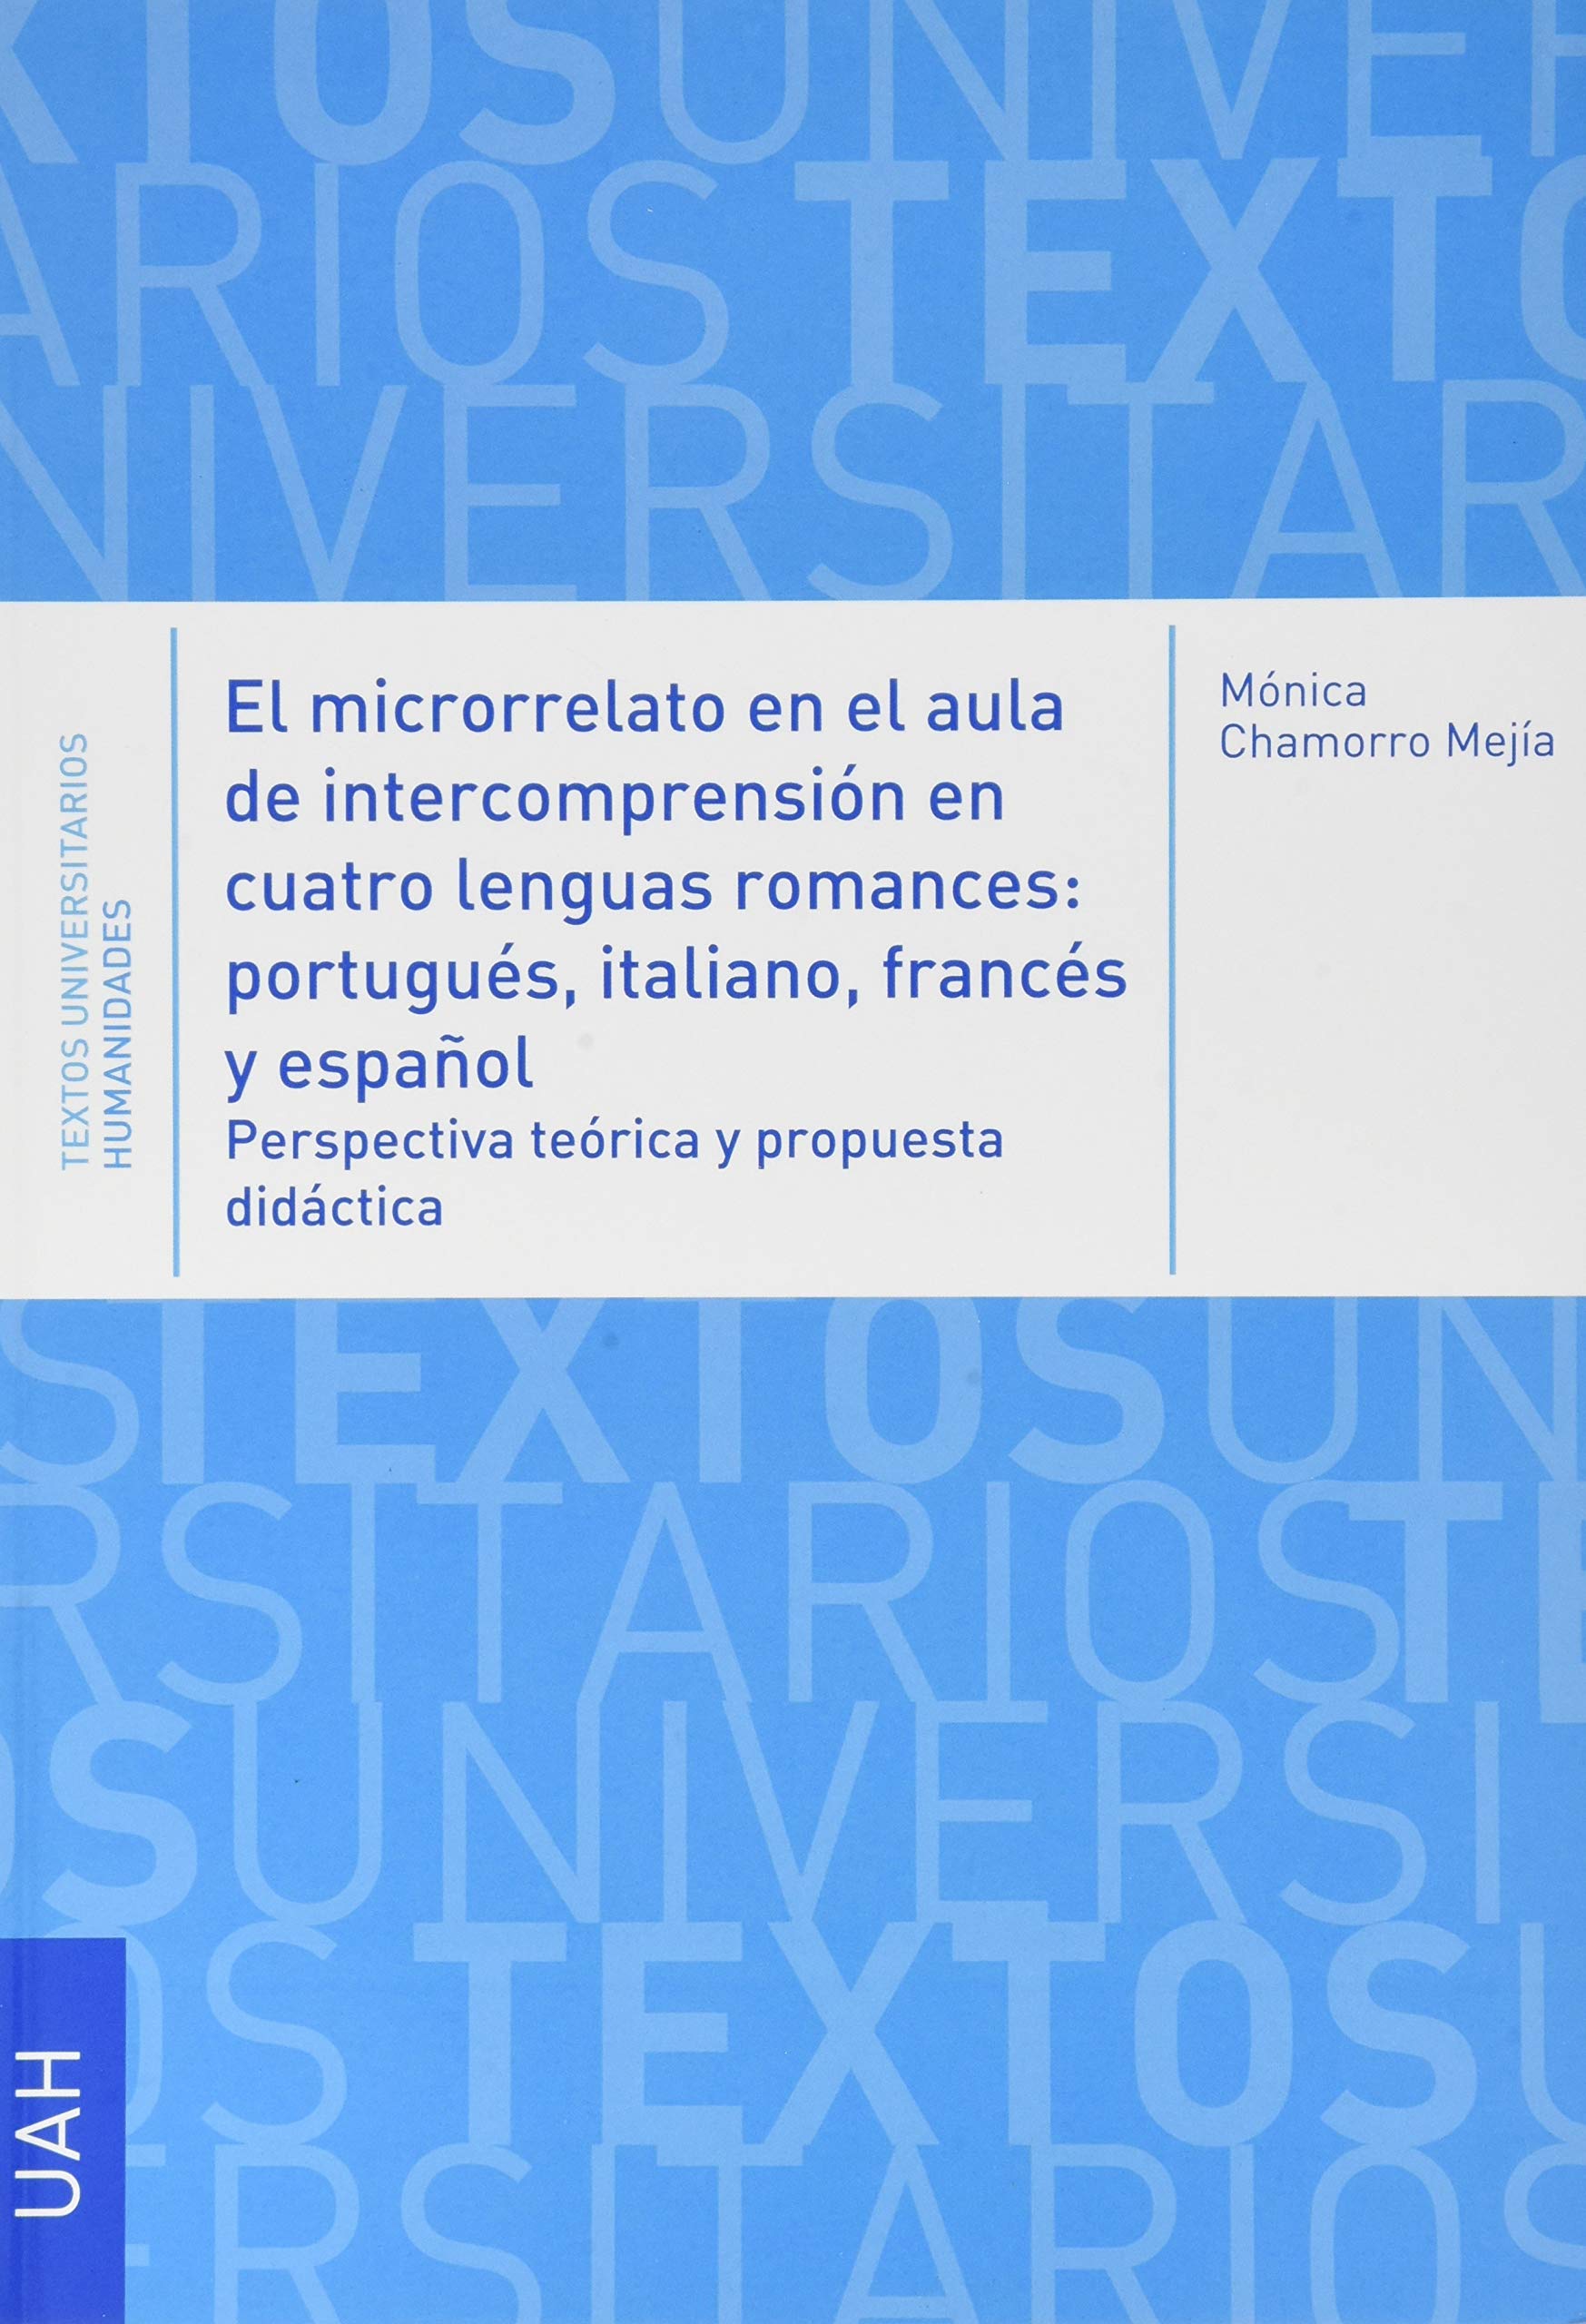 El microrrelato en el aula de intercomprensión en cuatro lenguas romances portugués, italiano, francés y español, perspectiva teórica y propuesta didáctica